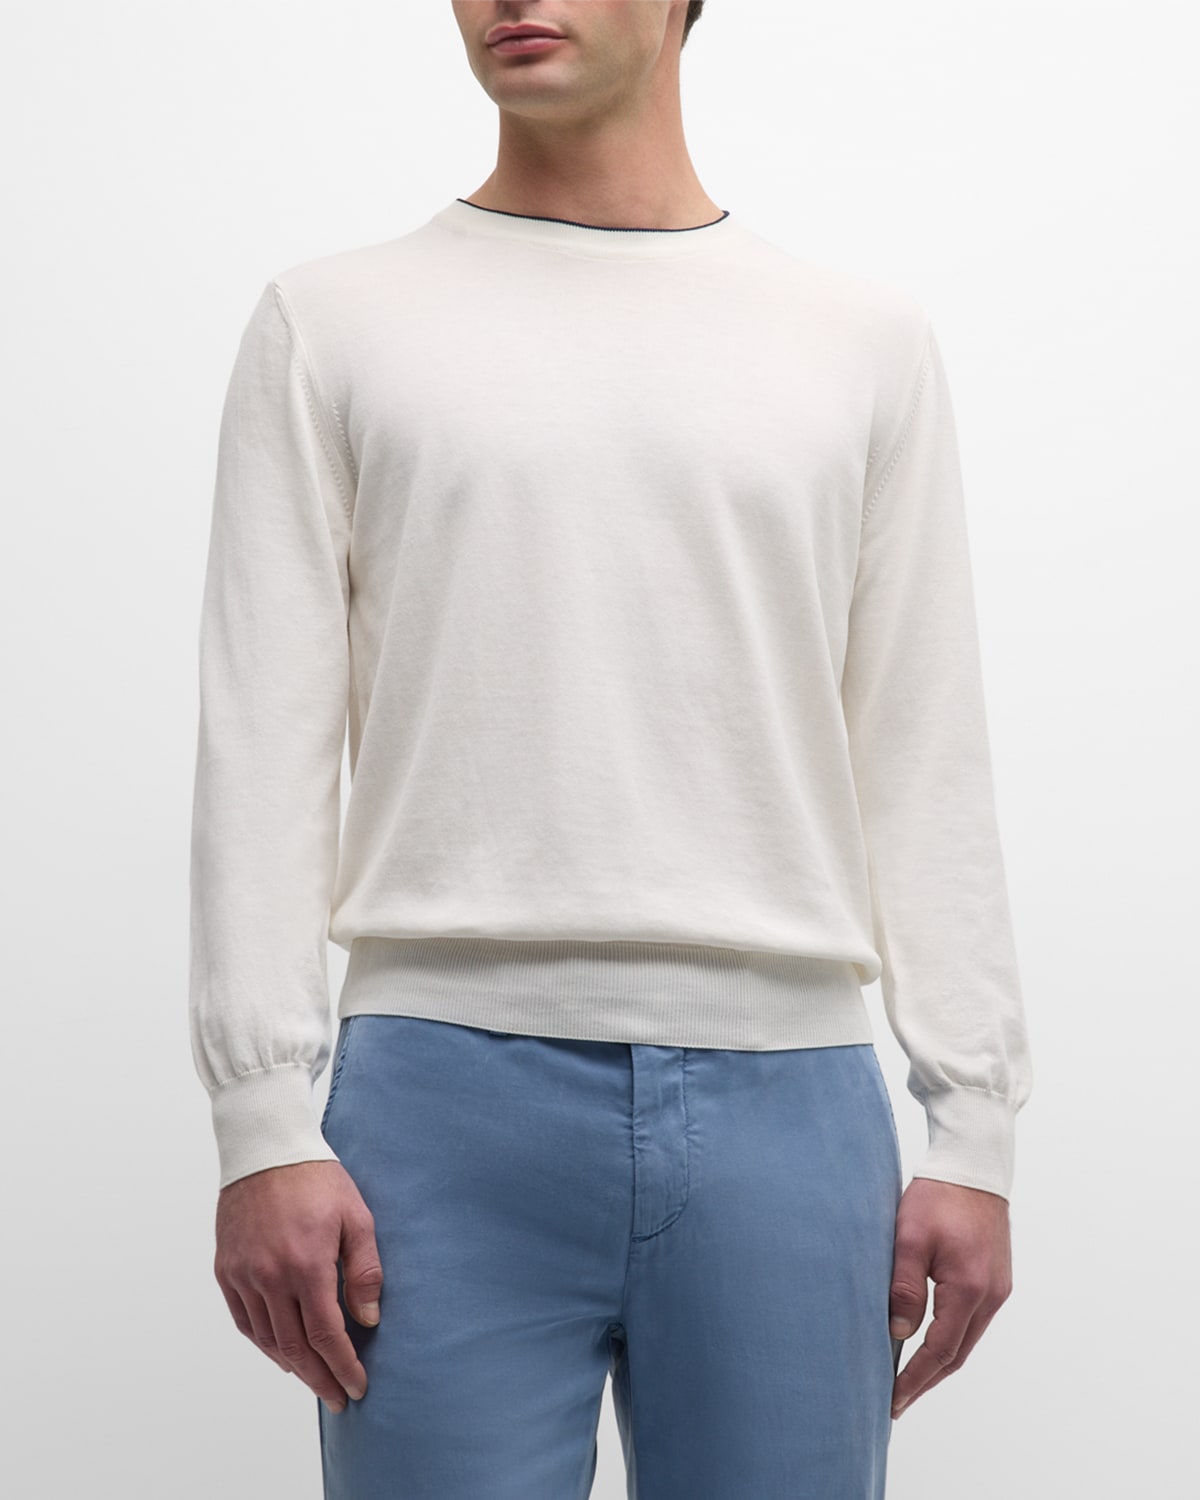 Canali Men's Cotton Crewneck Sweater In White